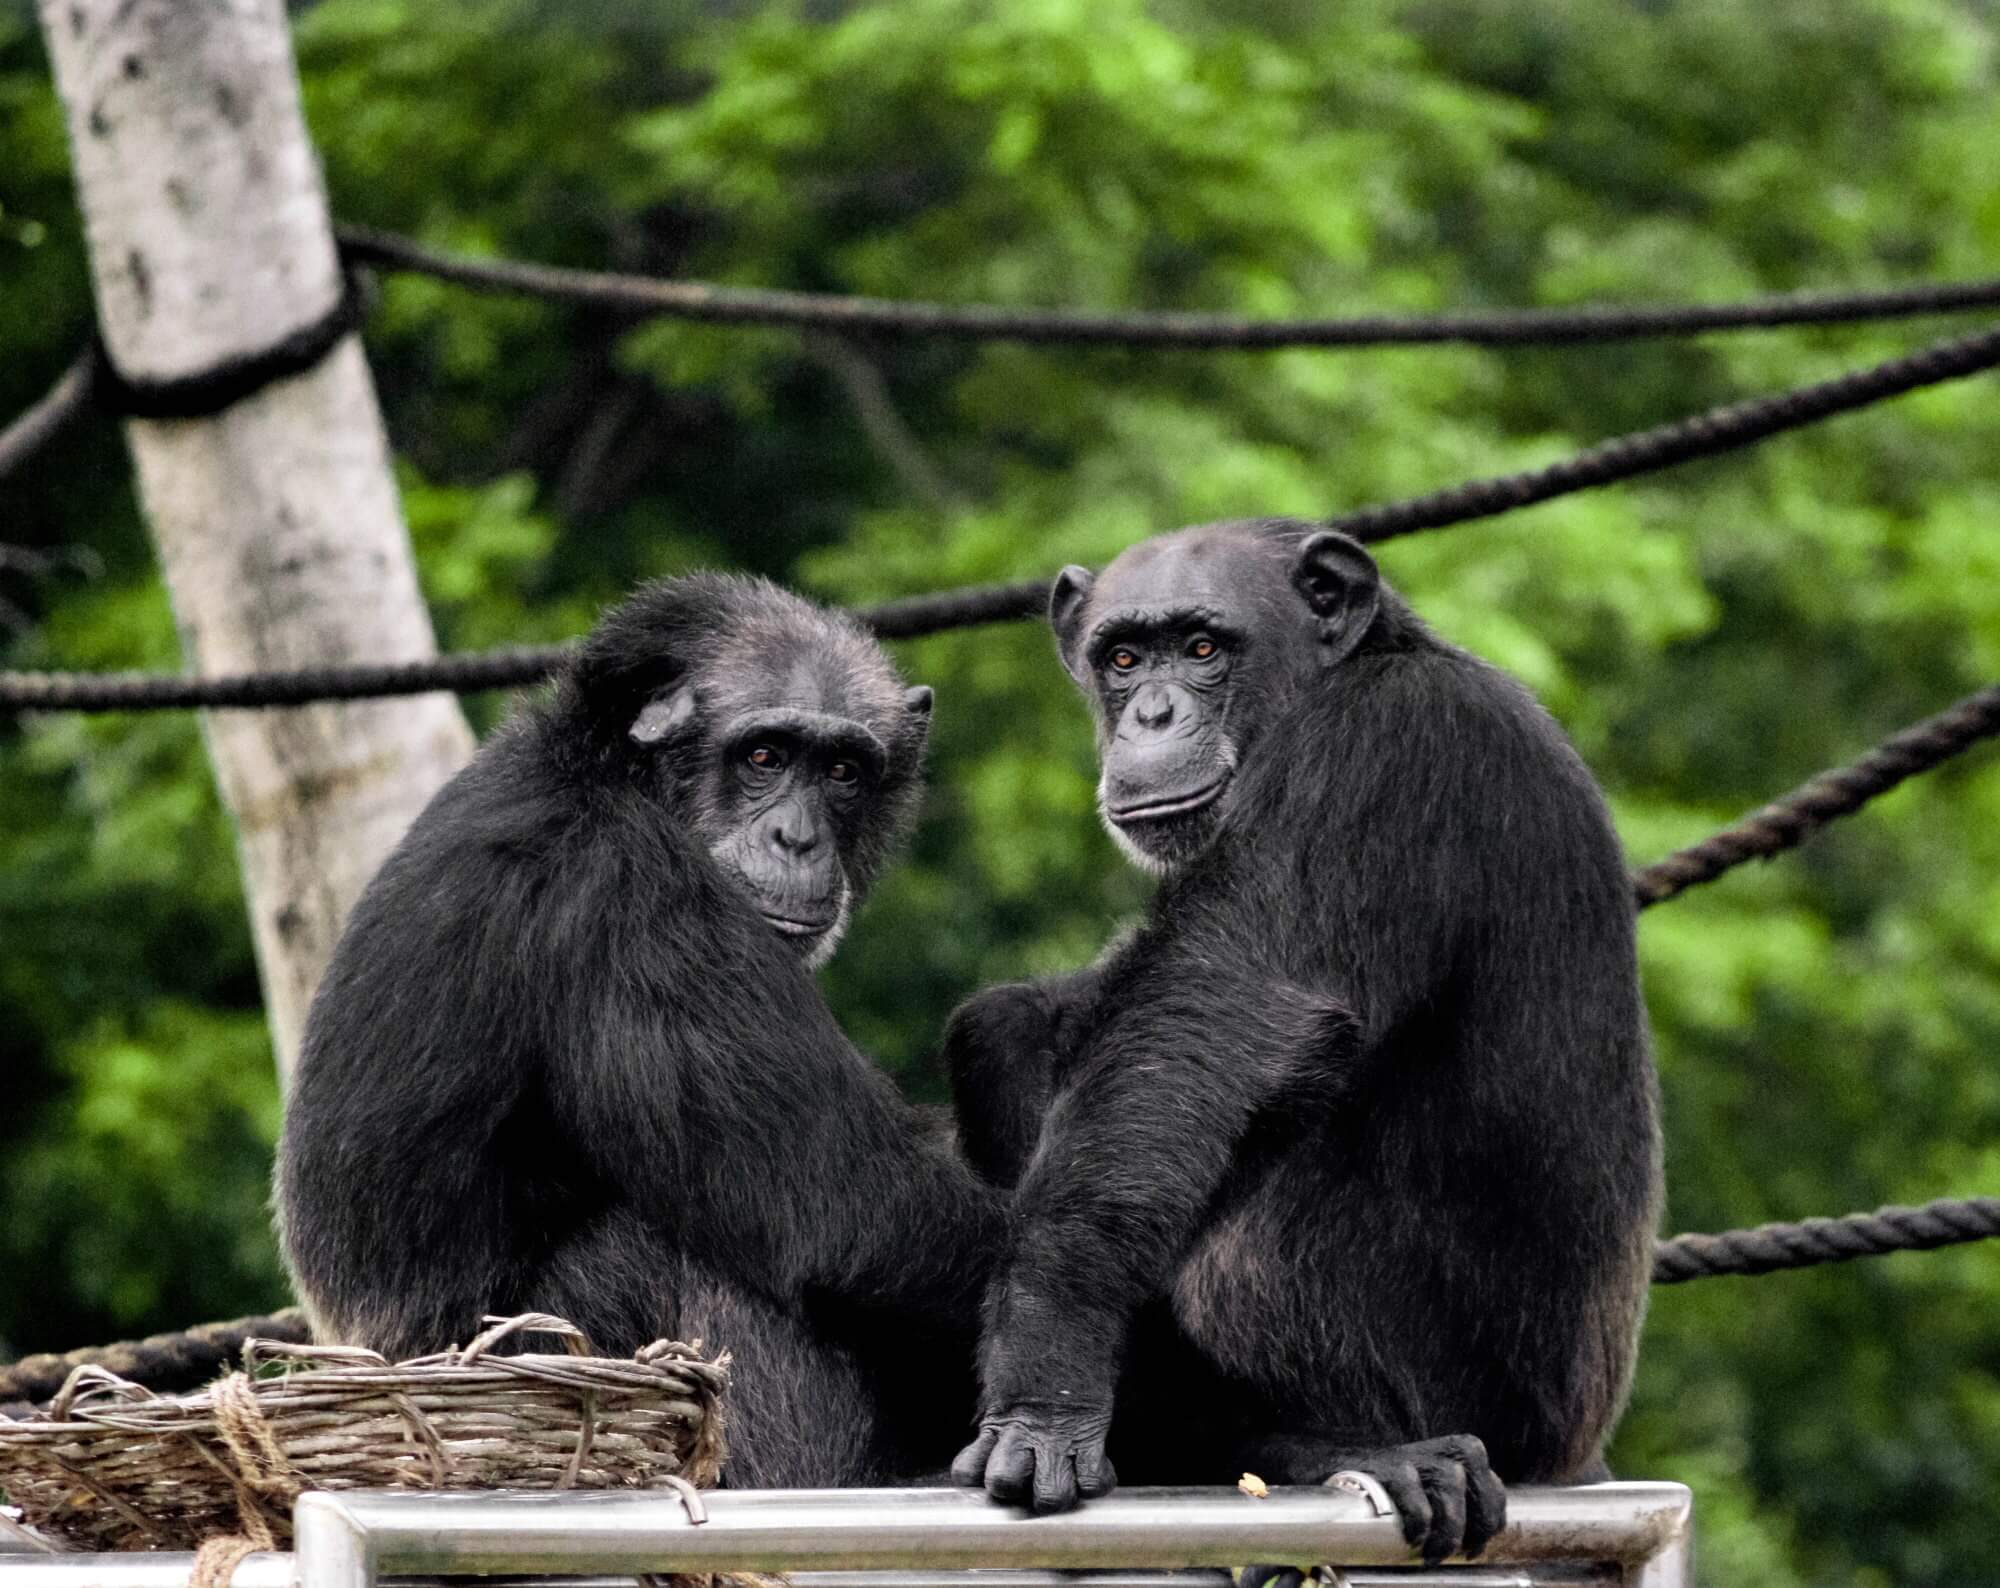 #video | Oppdaget en ny måte å kommunisere med sjimpanser slektninger